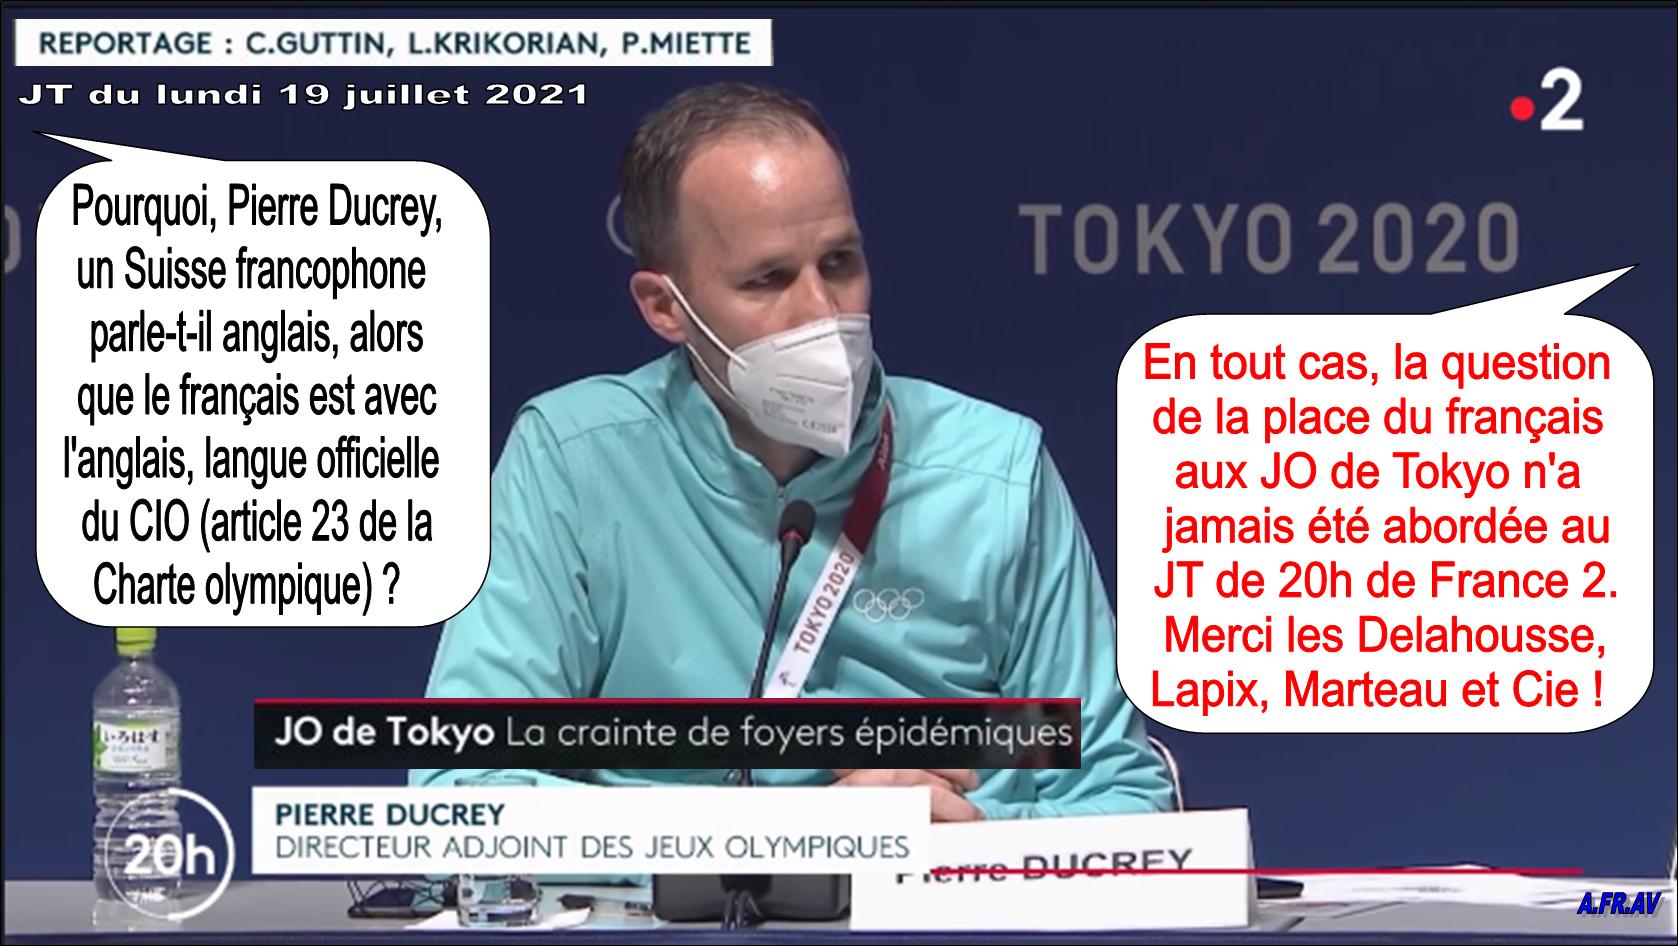 Pierre Ducrey, CIO, JO de Tokyo, 20h de France 2